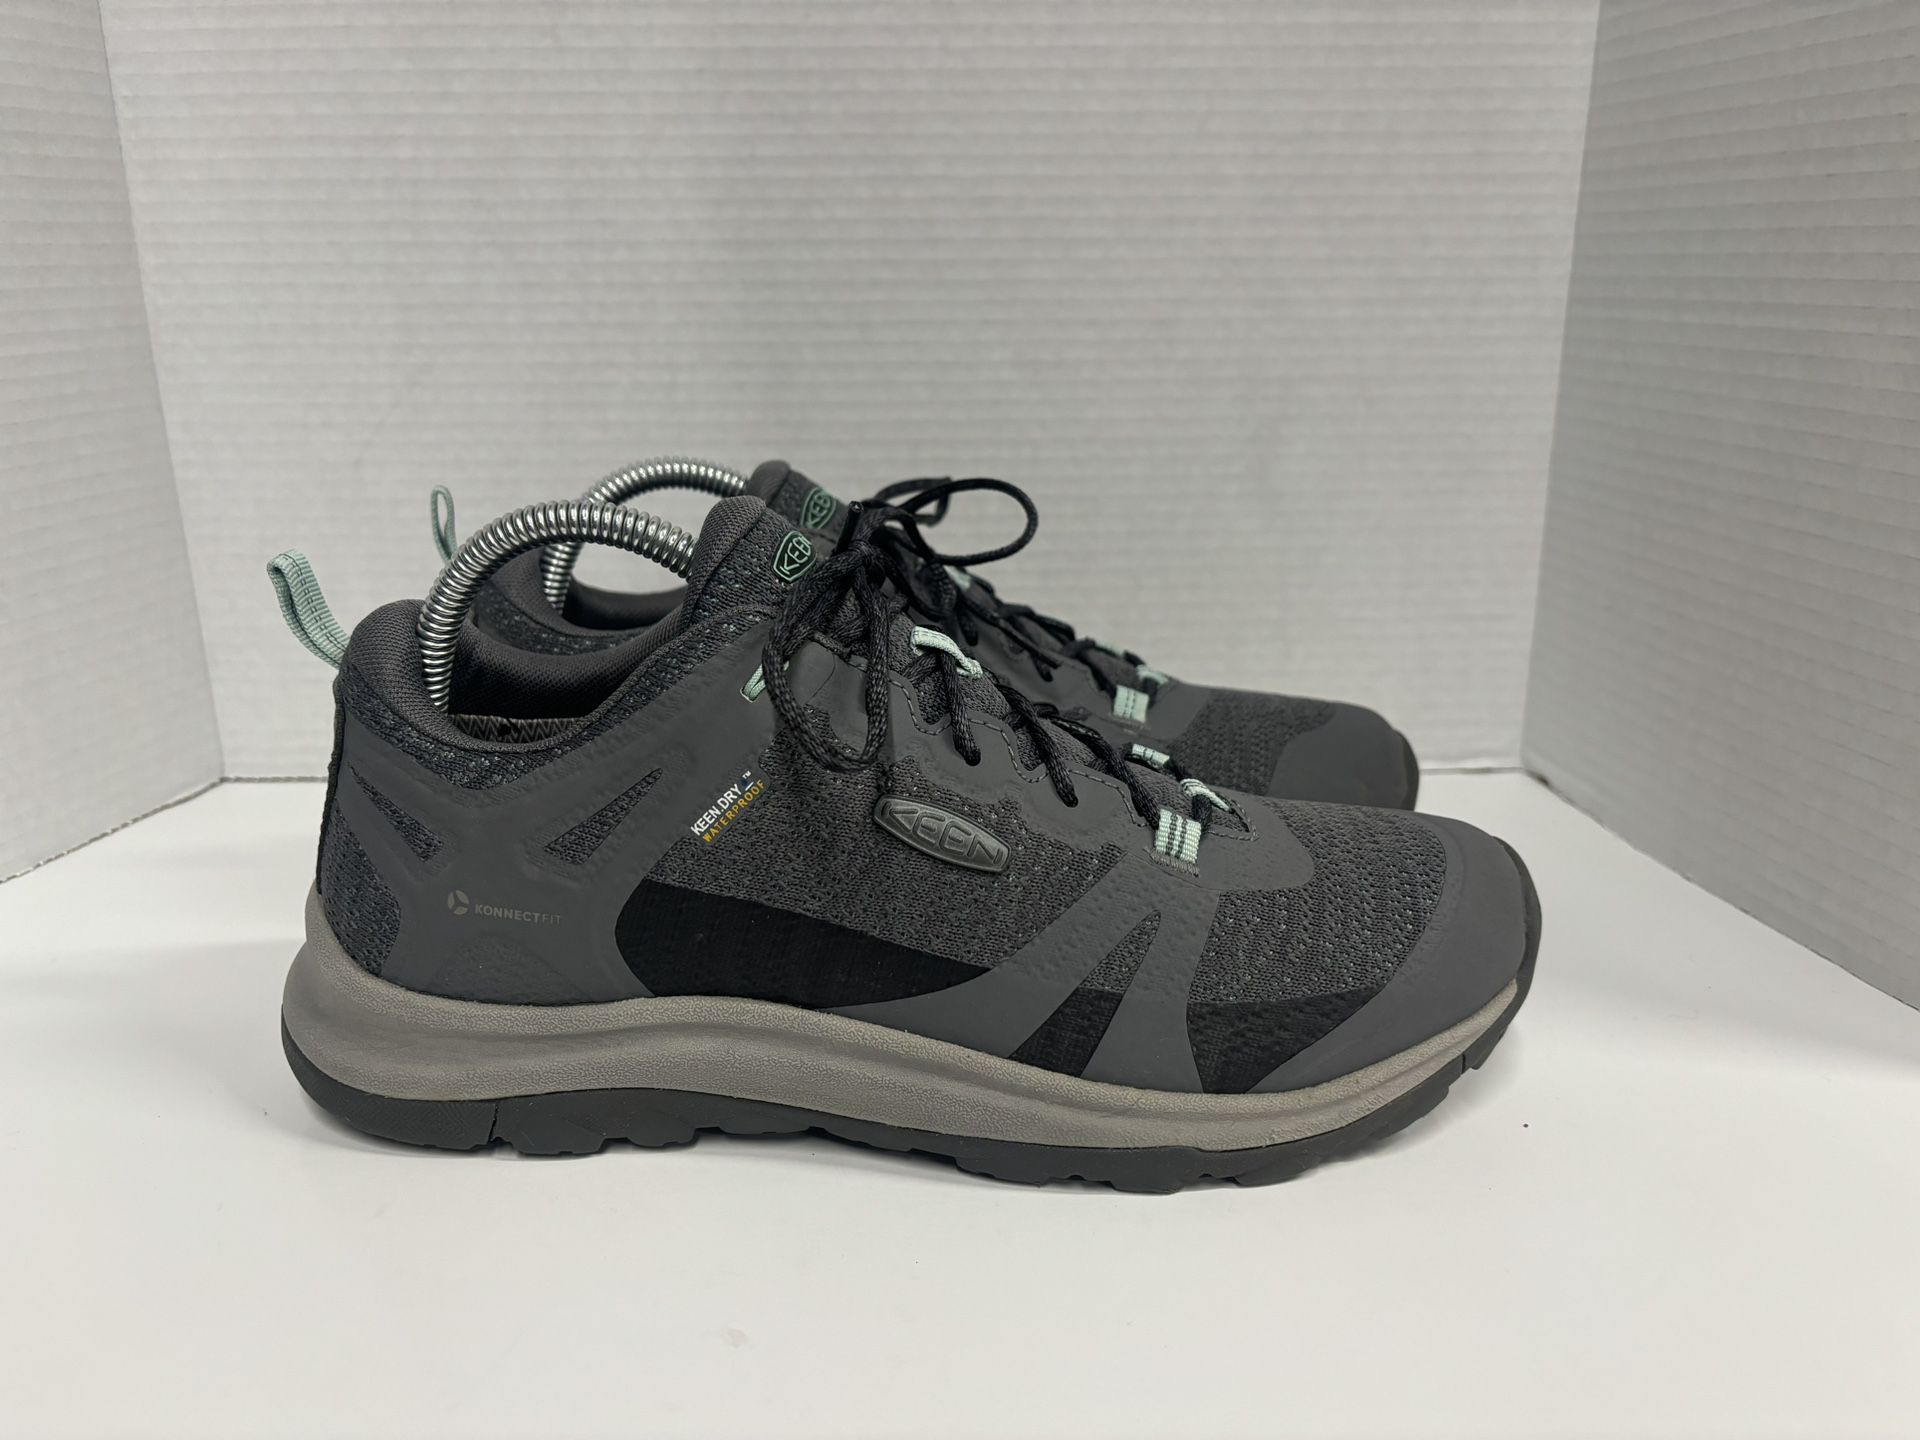 KEEN Terradora 2 Waterproof Hiking Shoes Women’s size 9.5